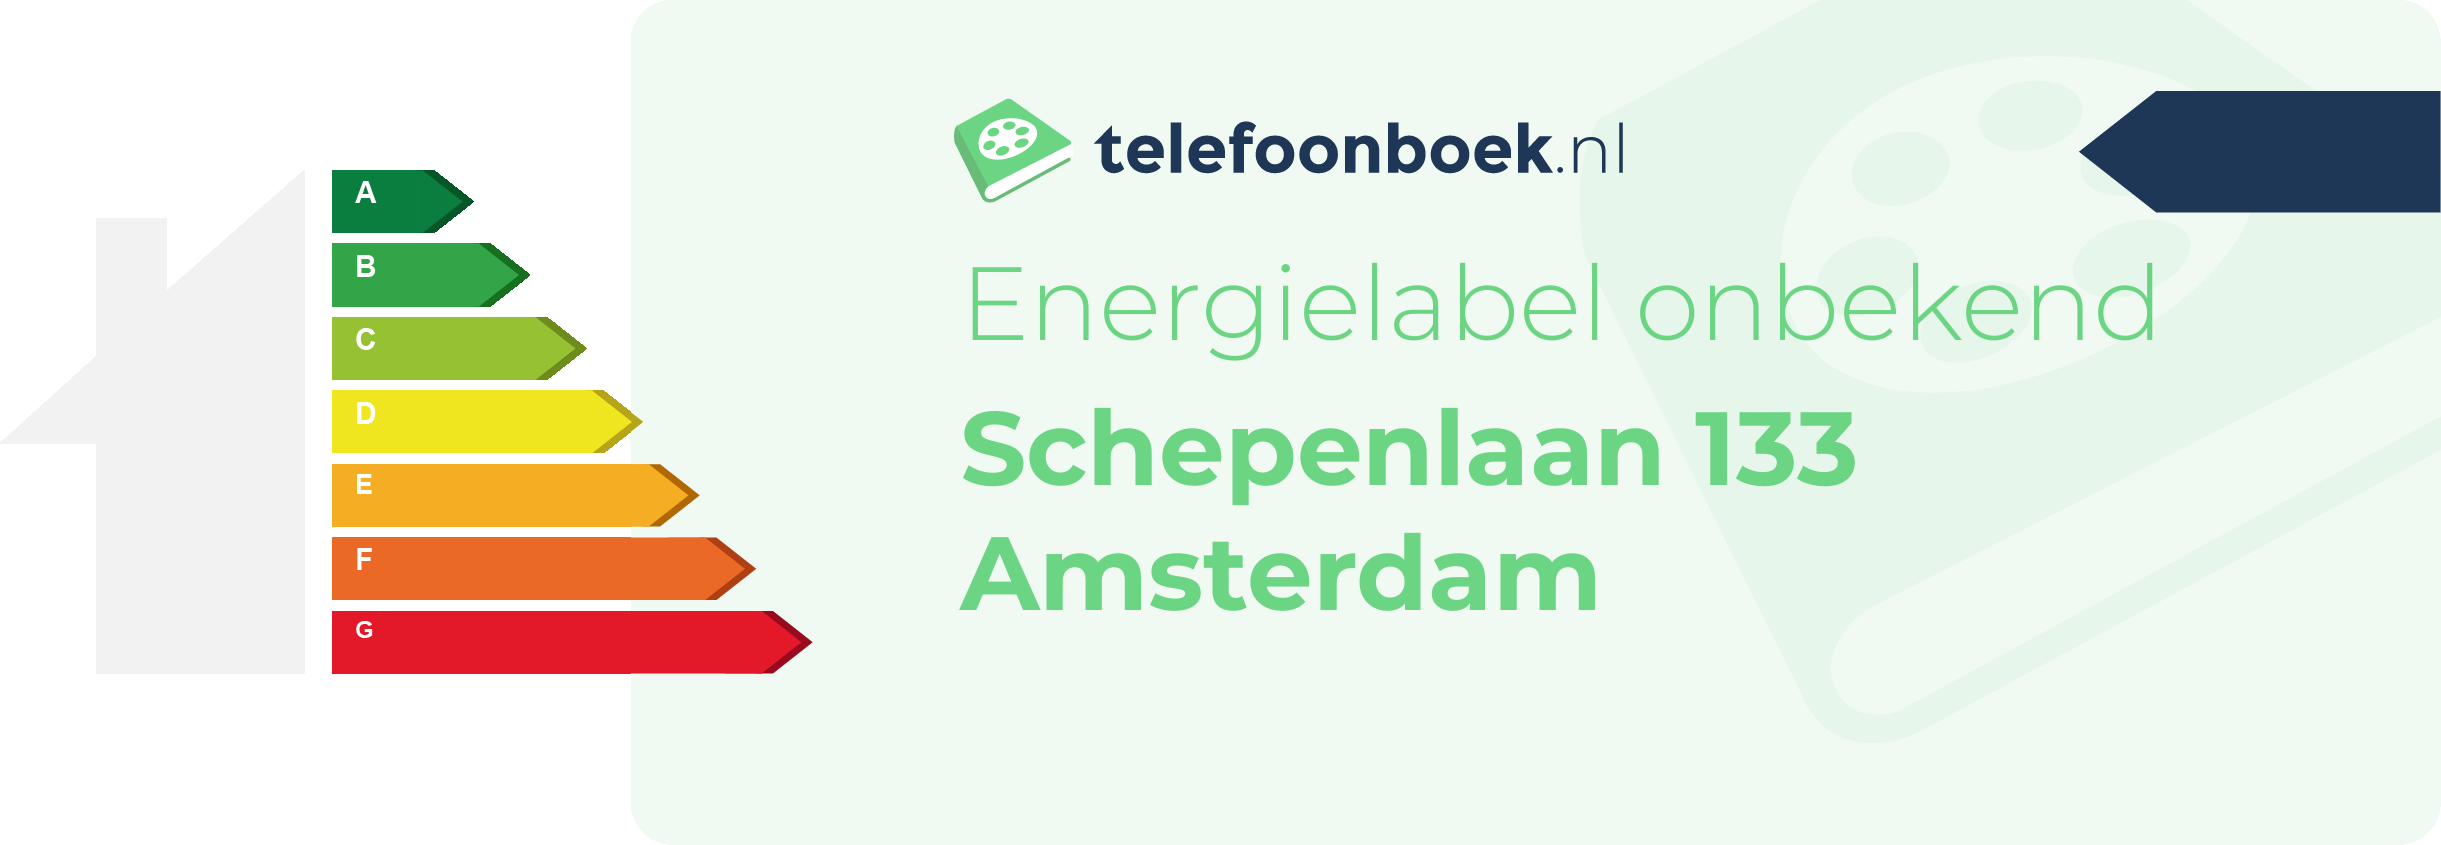 Energielabel Schepenlaan 133 Amsterdam